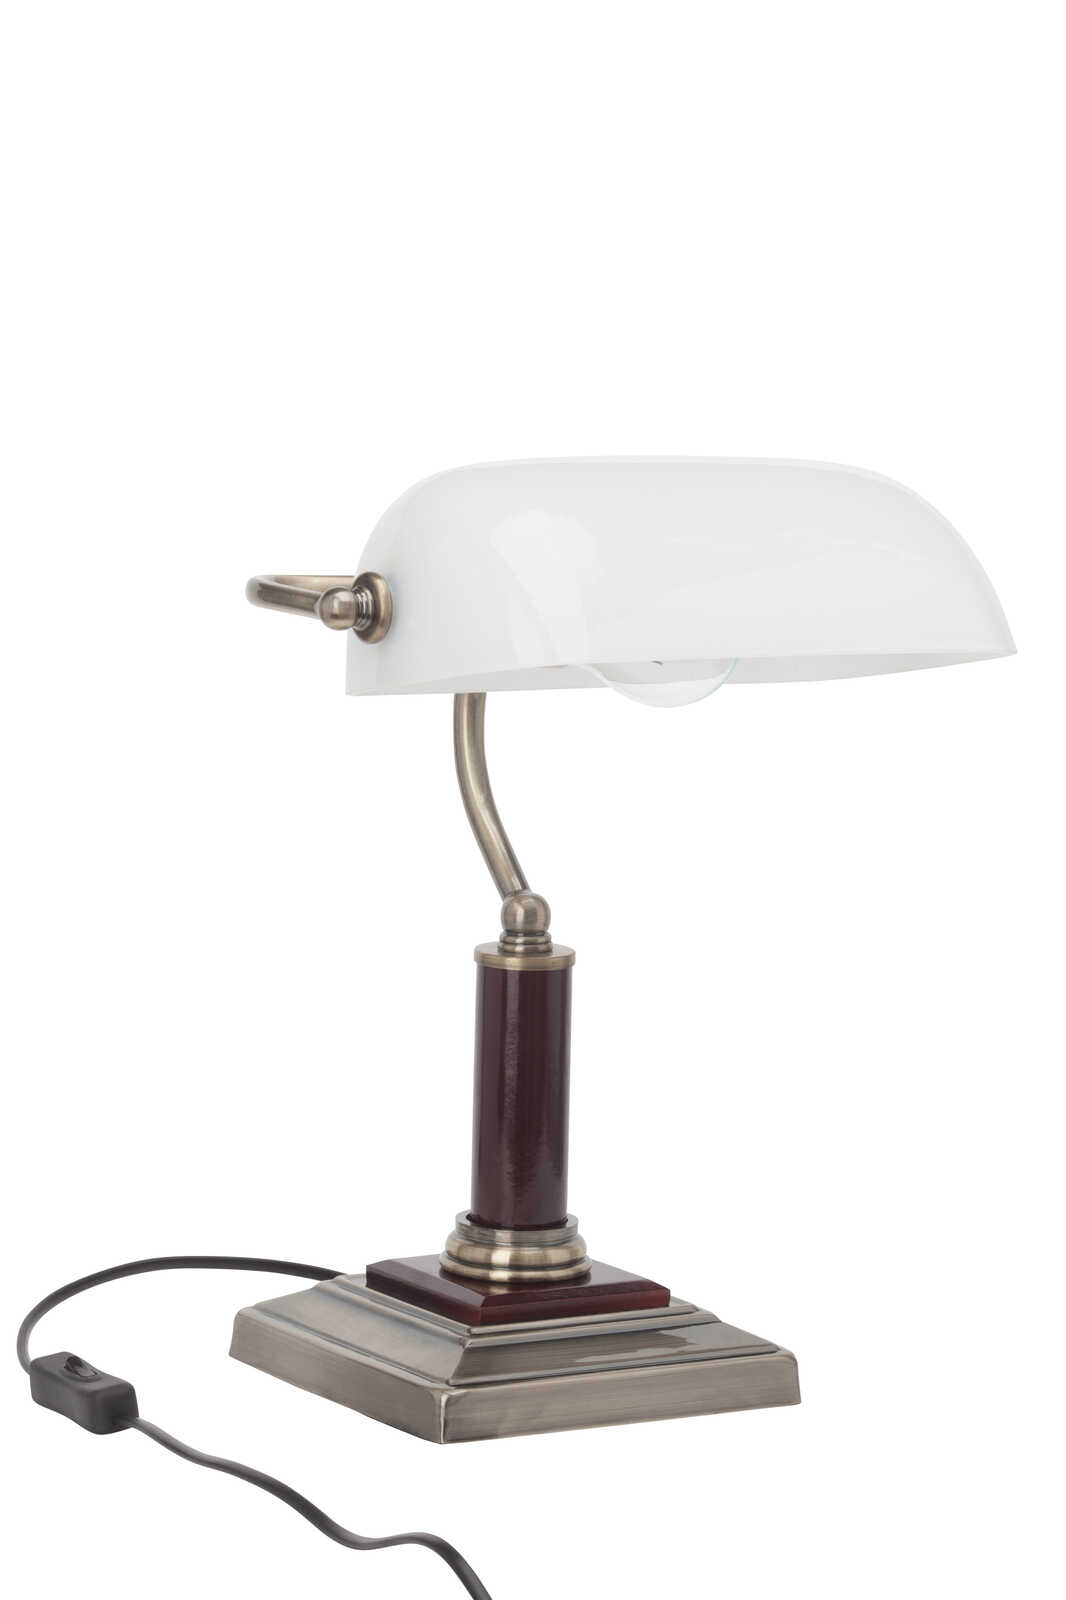             Glazen tafellamp - Arian - Goud
        